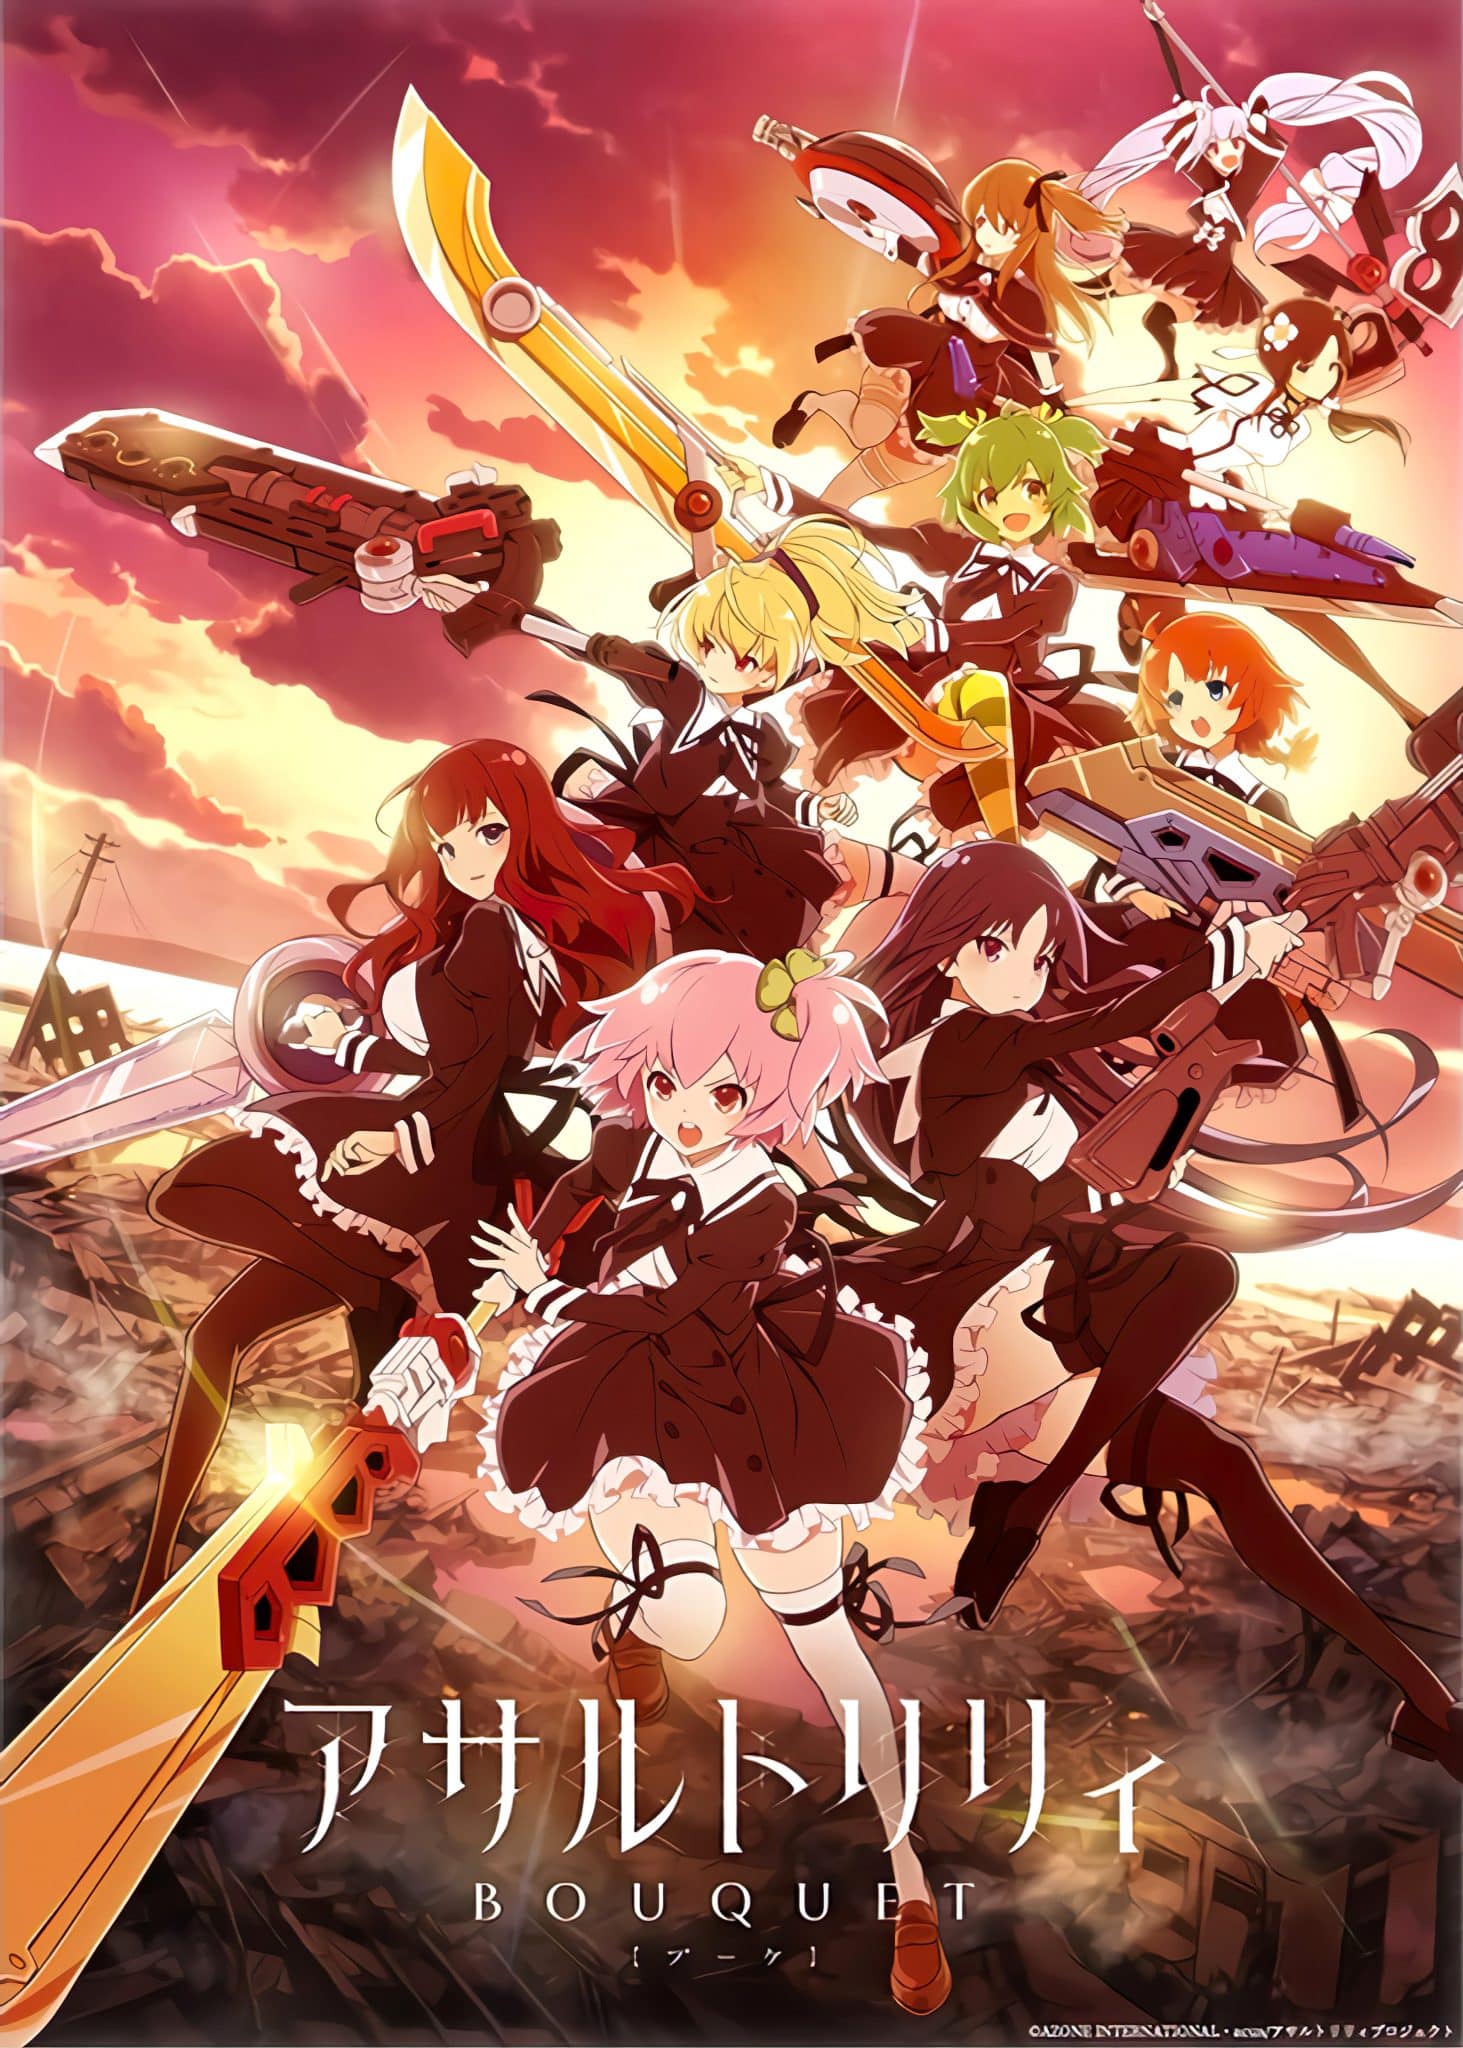 Annonce de la date de sortie de l'anime Assault Lily - Bouquet